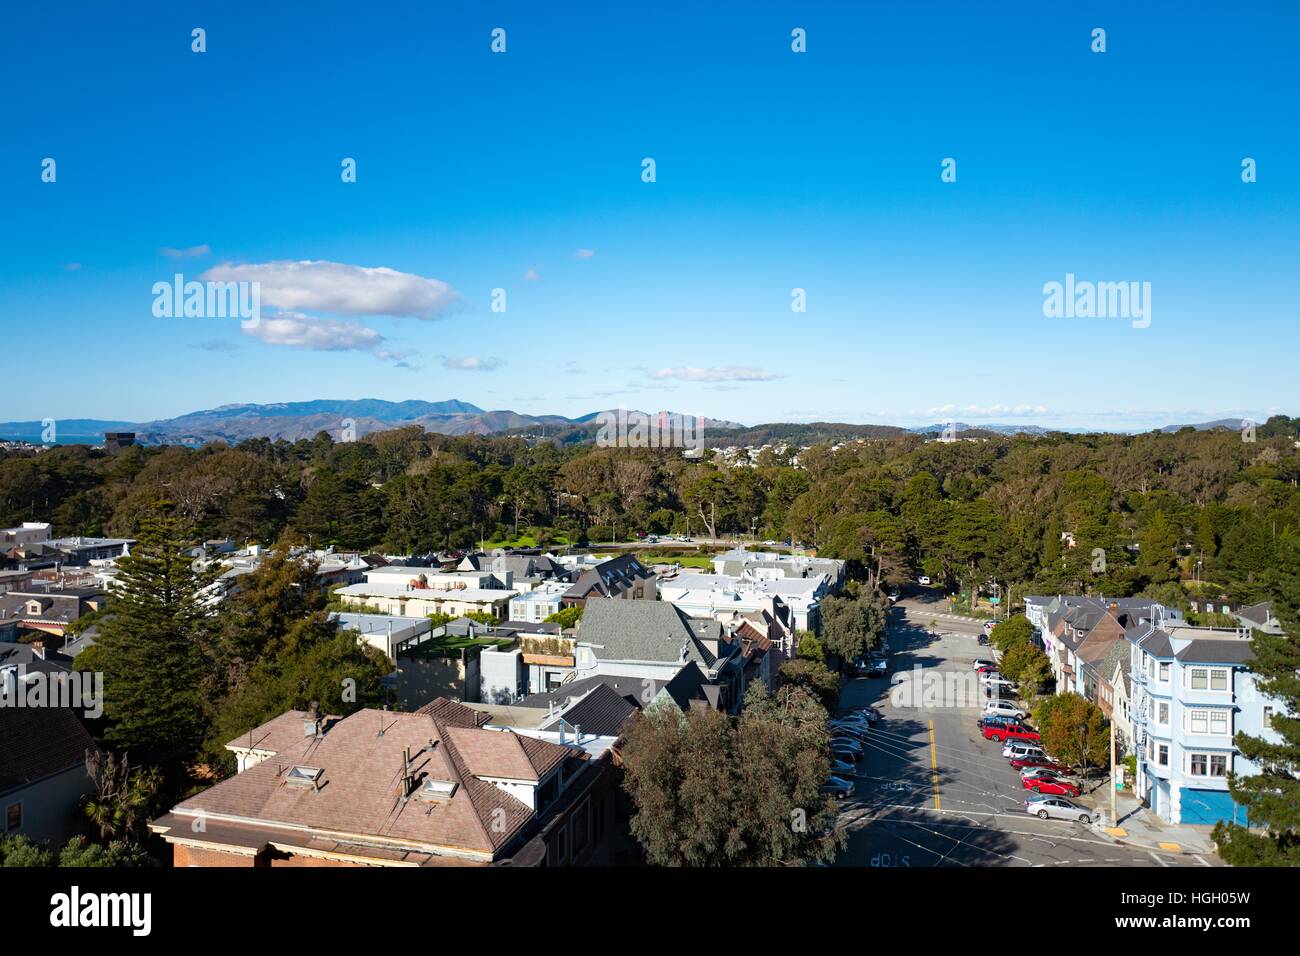 Vista aérea, mirando al norte, de San Francisco, California, del Parnassus Heights, incluyendo el Parque Golden Gate, la torre de la DeYoung en el museo, y las torres del Puente Golden Gate, el 5 de enero, 2017 Foto de stock